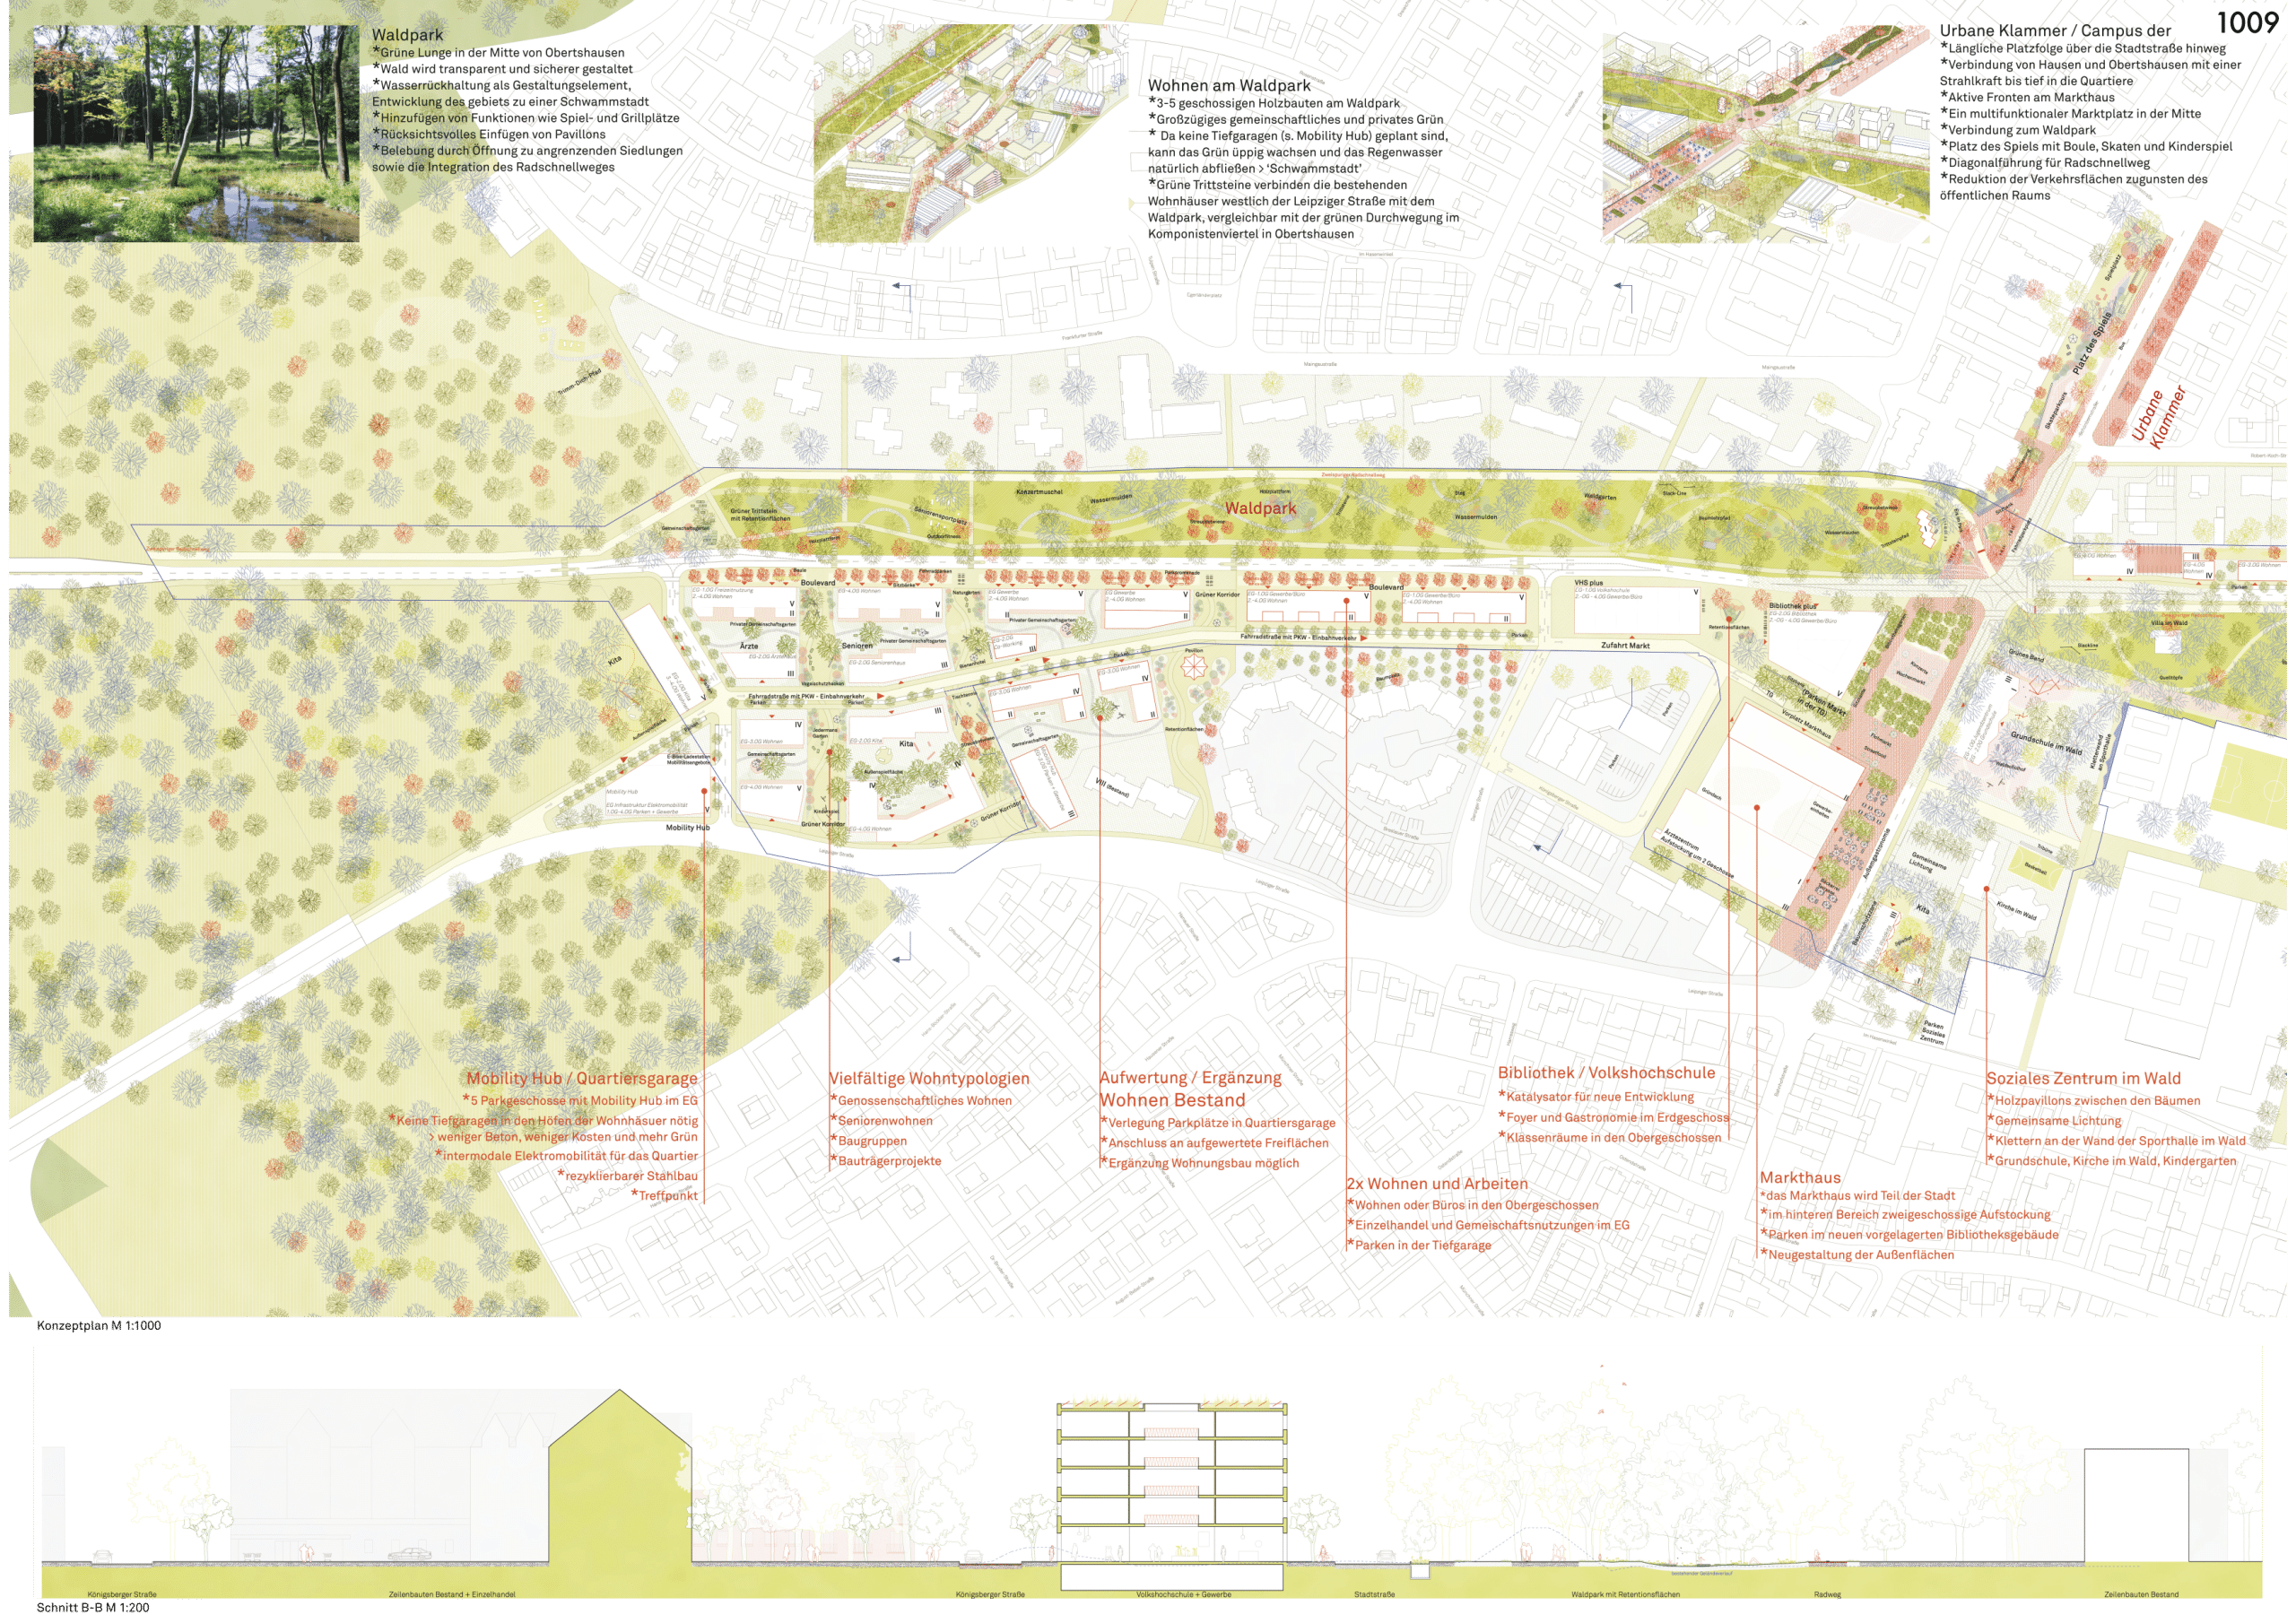 Lageplan und Axonometrien die den Entwurf zeigen. Eine grüne Achse mit Wildpark kreuzt eine urbane Achse mit öffentlichen Nutzungen.